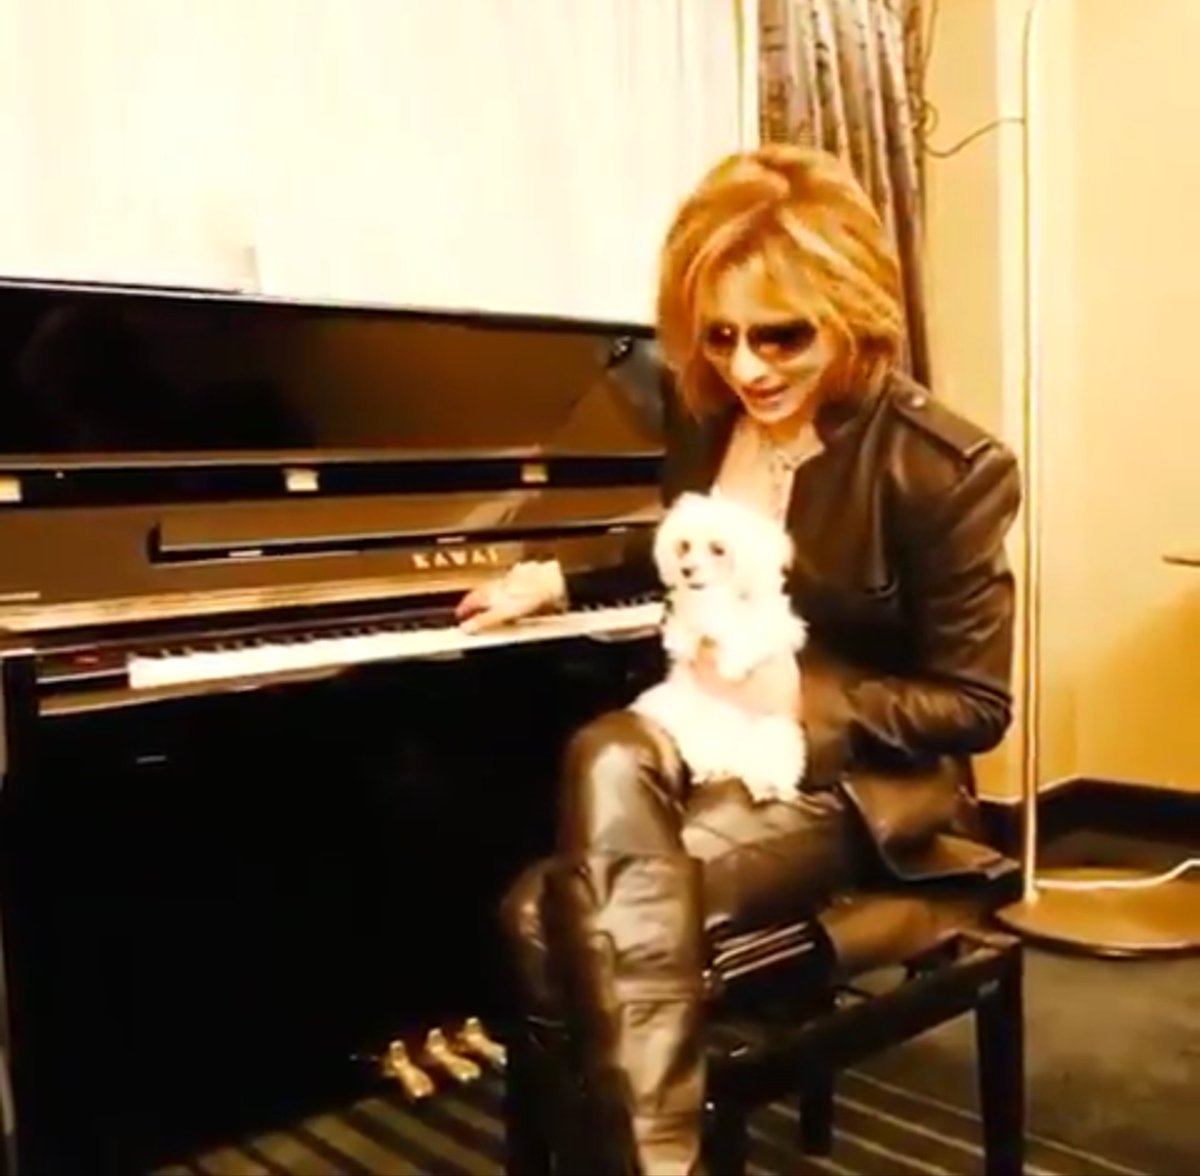 ぐてぃー Always With Yoshiki ほっこりする映像ですね O O よっちゃん犬好きだから和んでるのかな よっちゃんのメロディちゃんも何か歌える